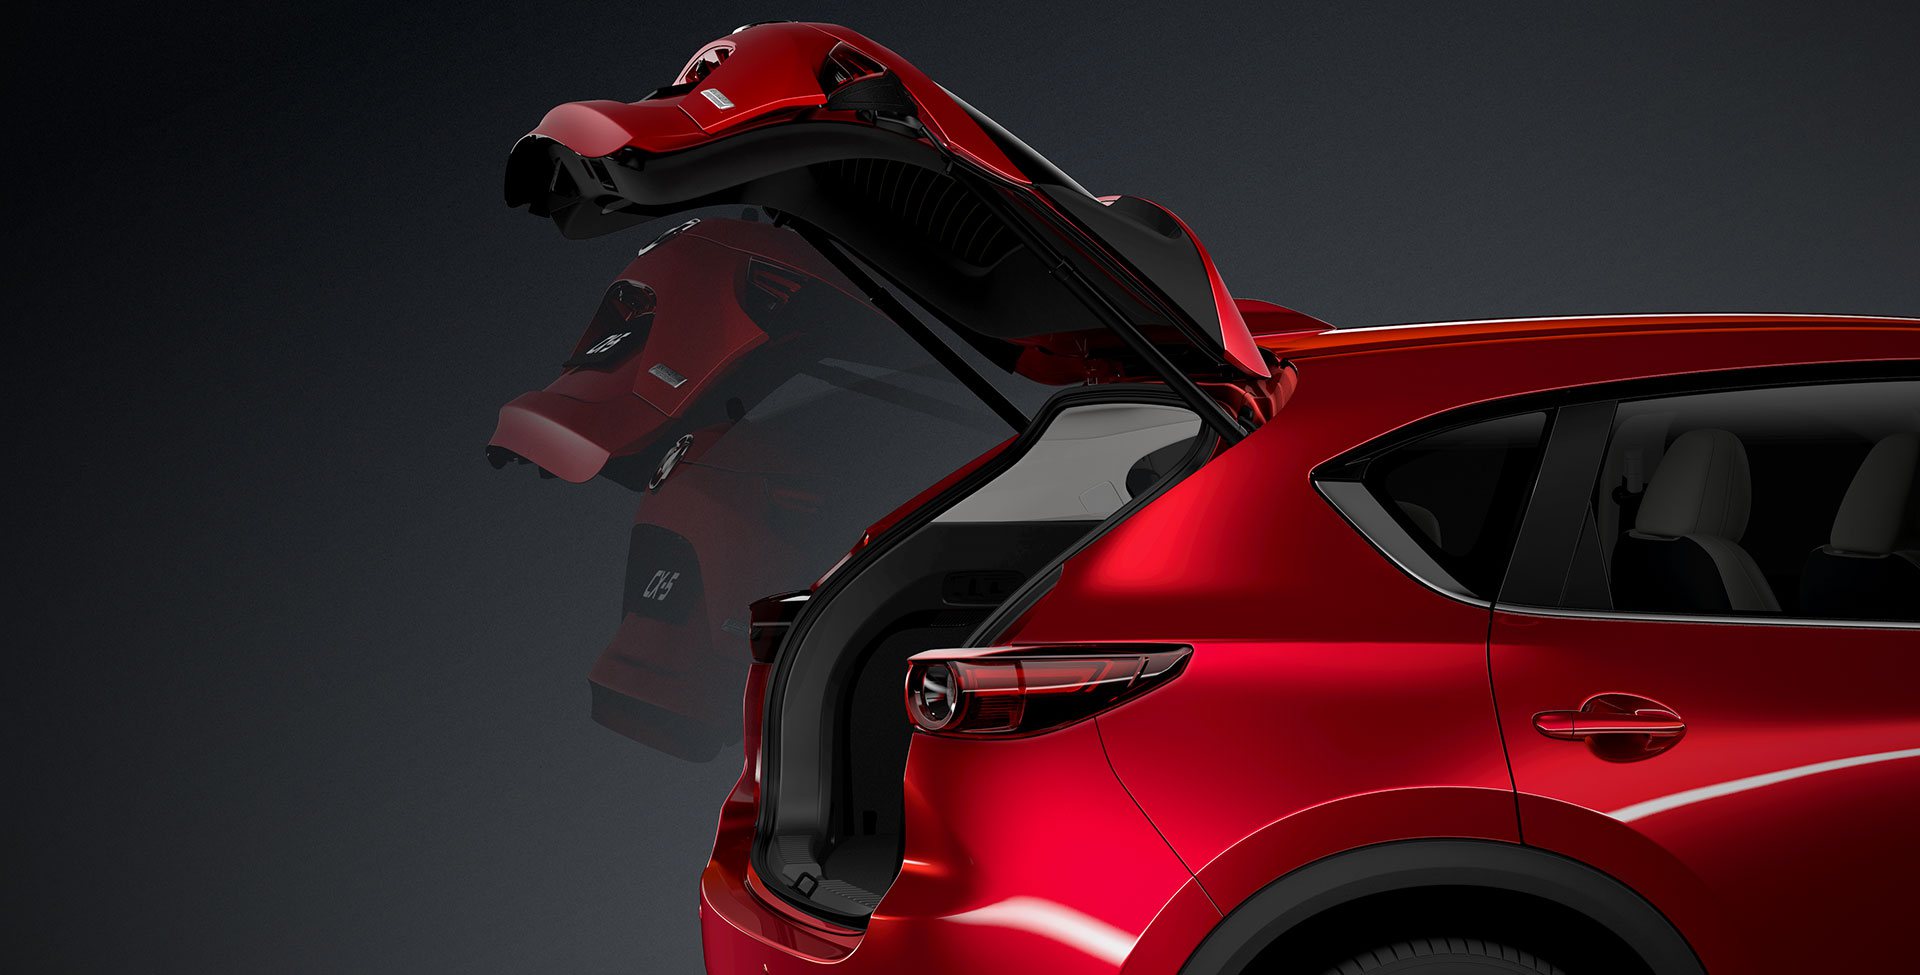 Der Mazda CX-5 präsentiert sich innen wie außen als kultivierter Mittelklasse-SUV.